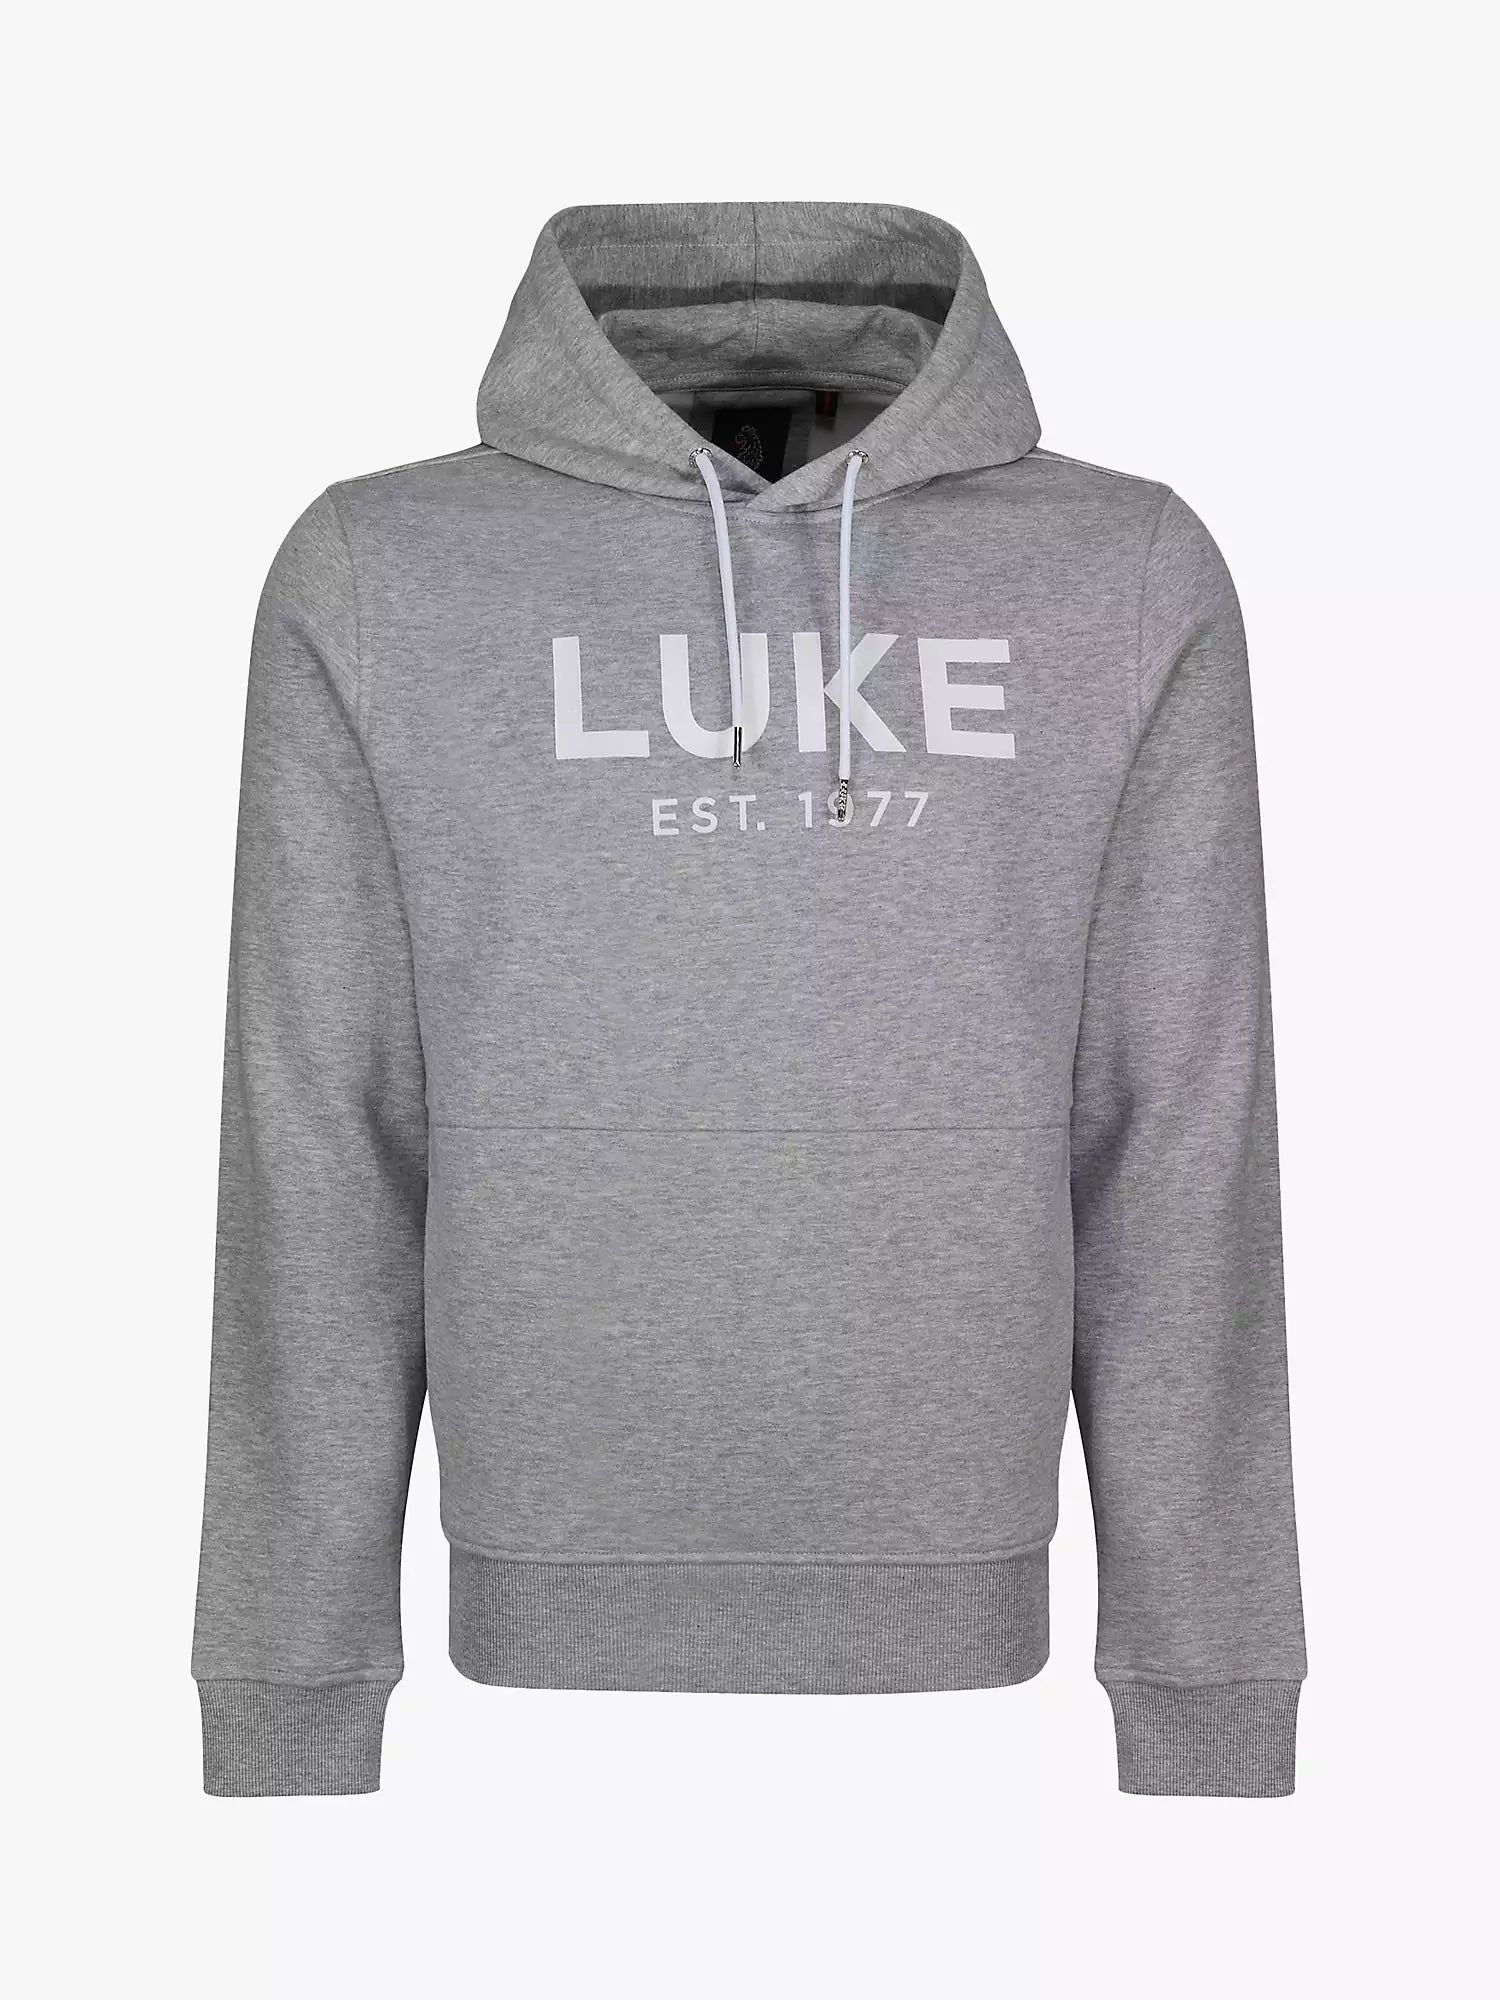 Luke Grand LUKE Est. 1977 Hoodie Marl Grey - Raw Menswear